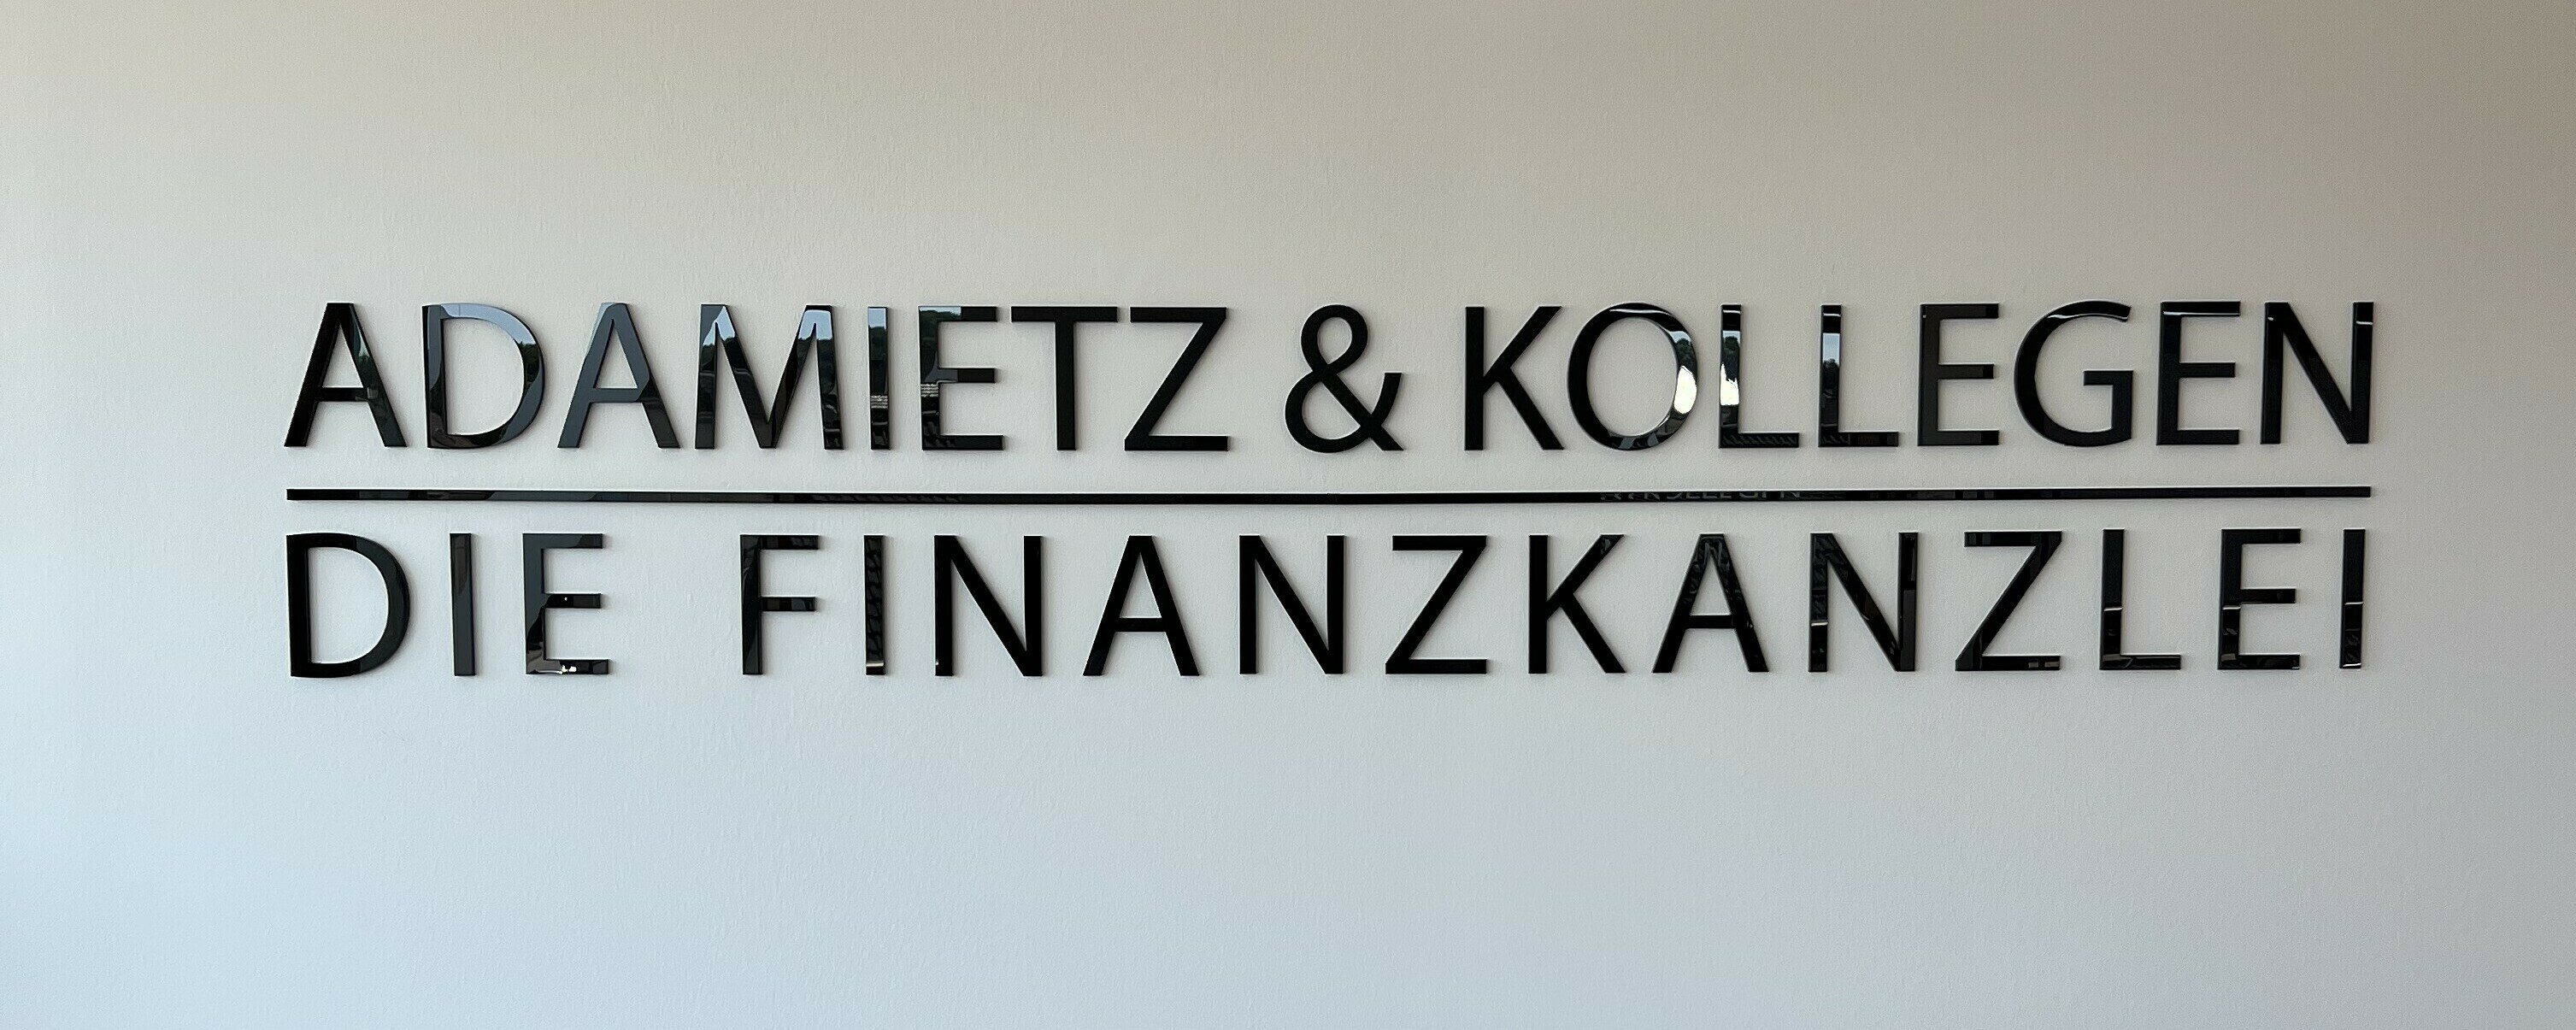 (c) Finanzkanzlei-adamietz.de